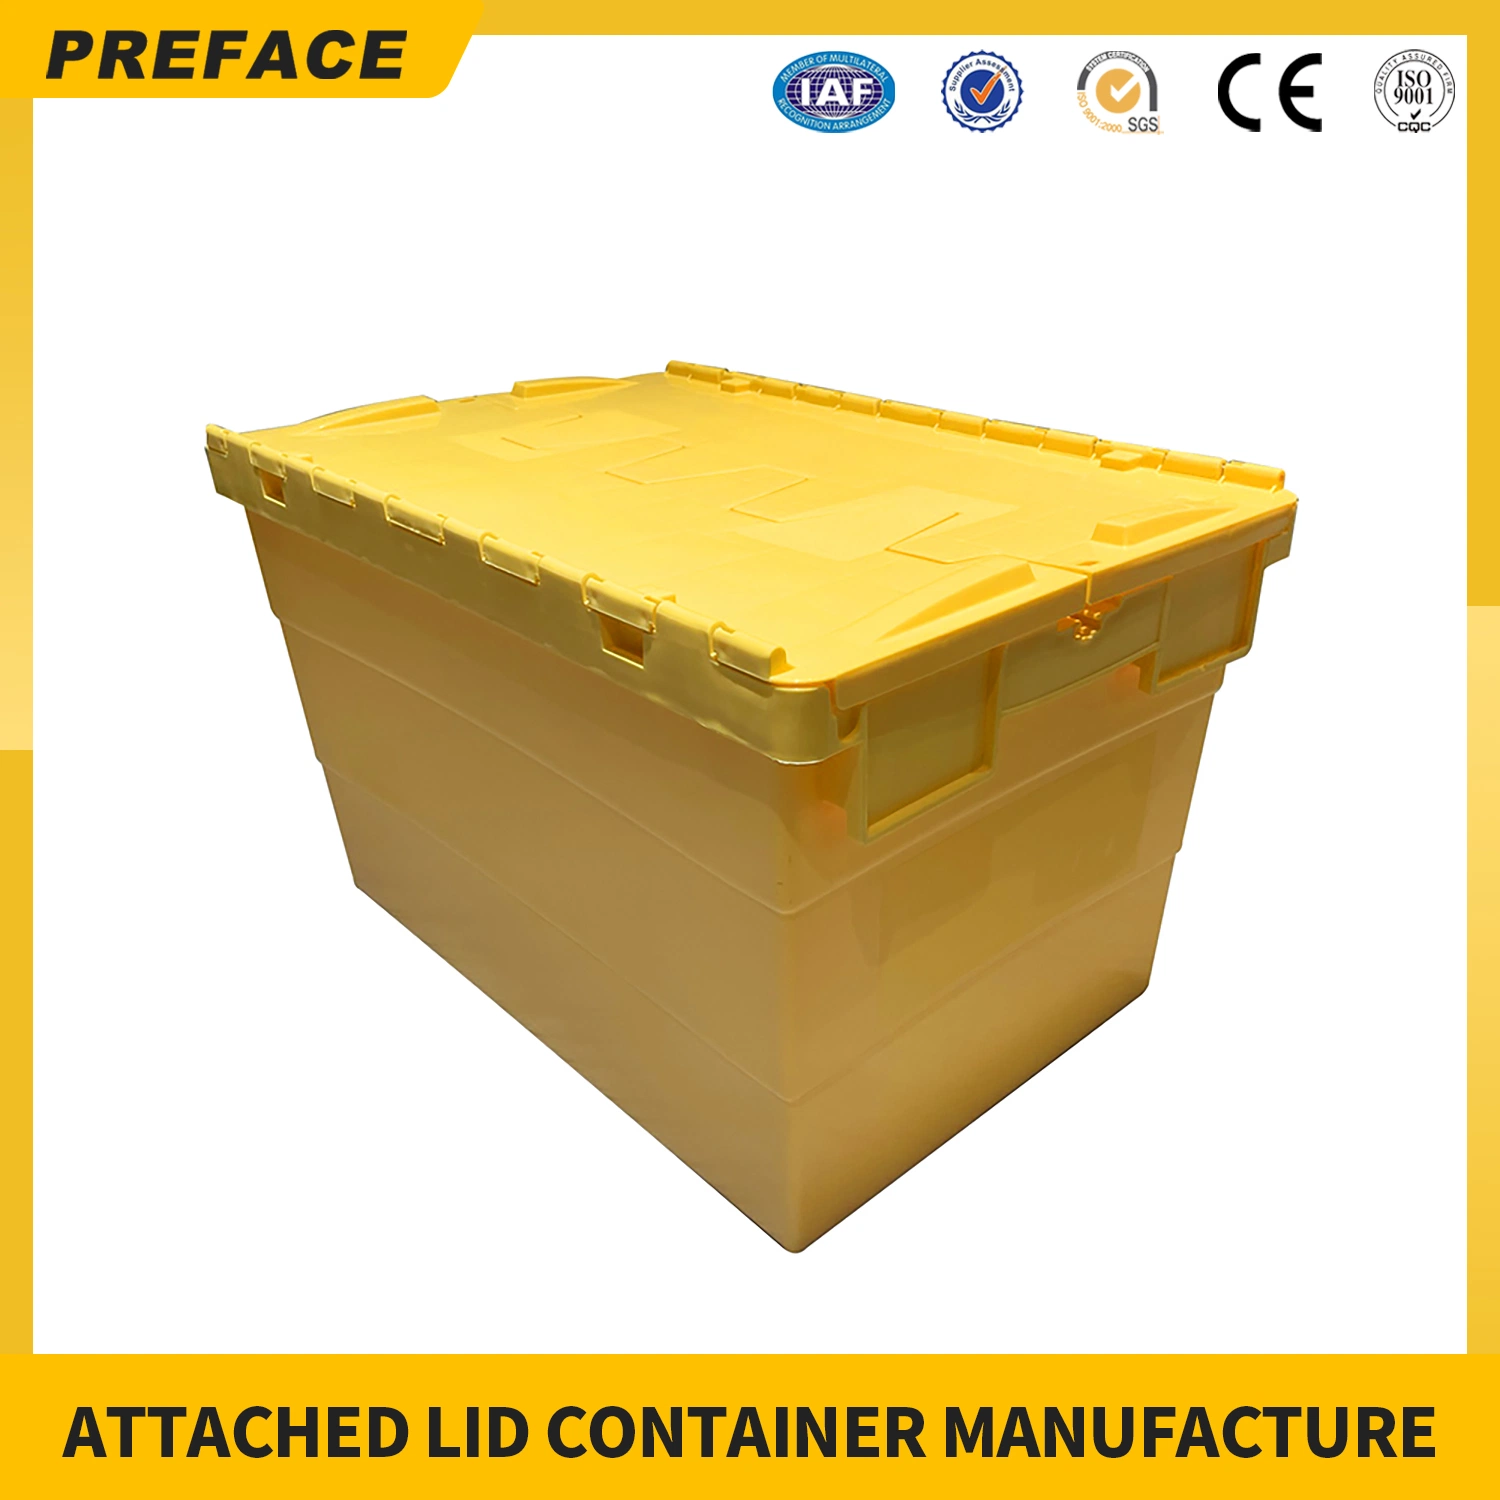 Fabricantes Atacado Portátil plástico Crate volume de negócios caixa de tampa anexa Distribuição e armazenamento